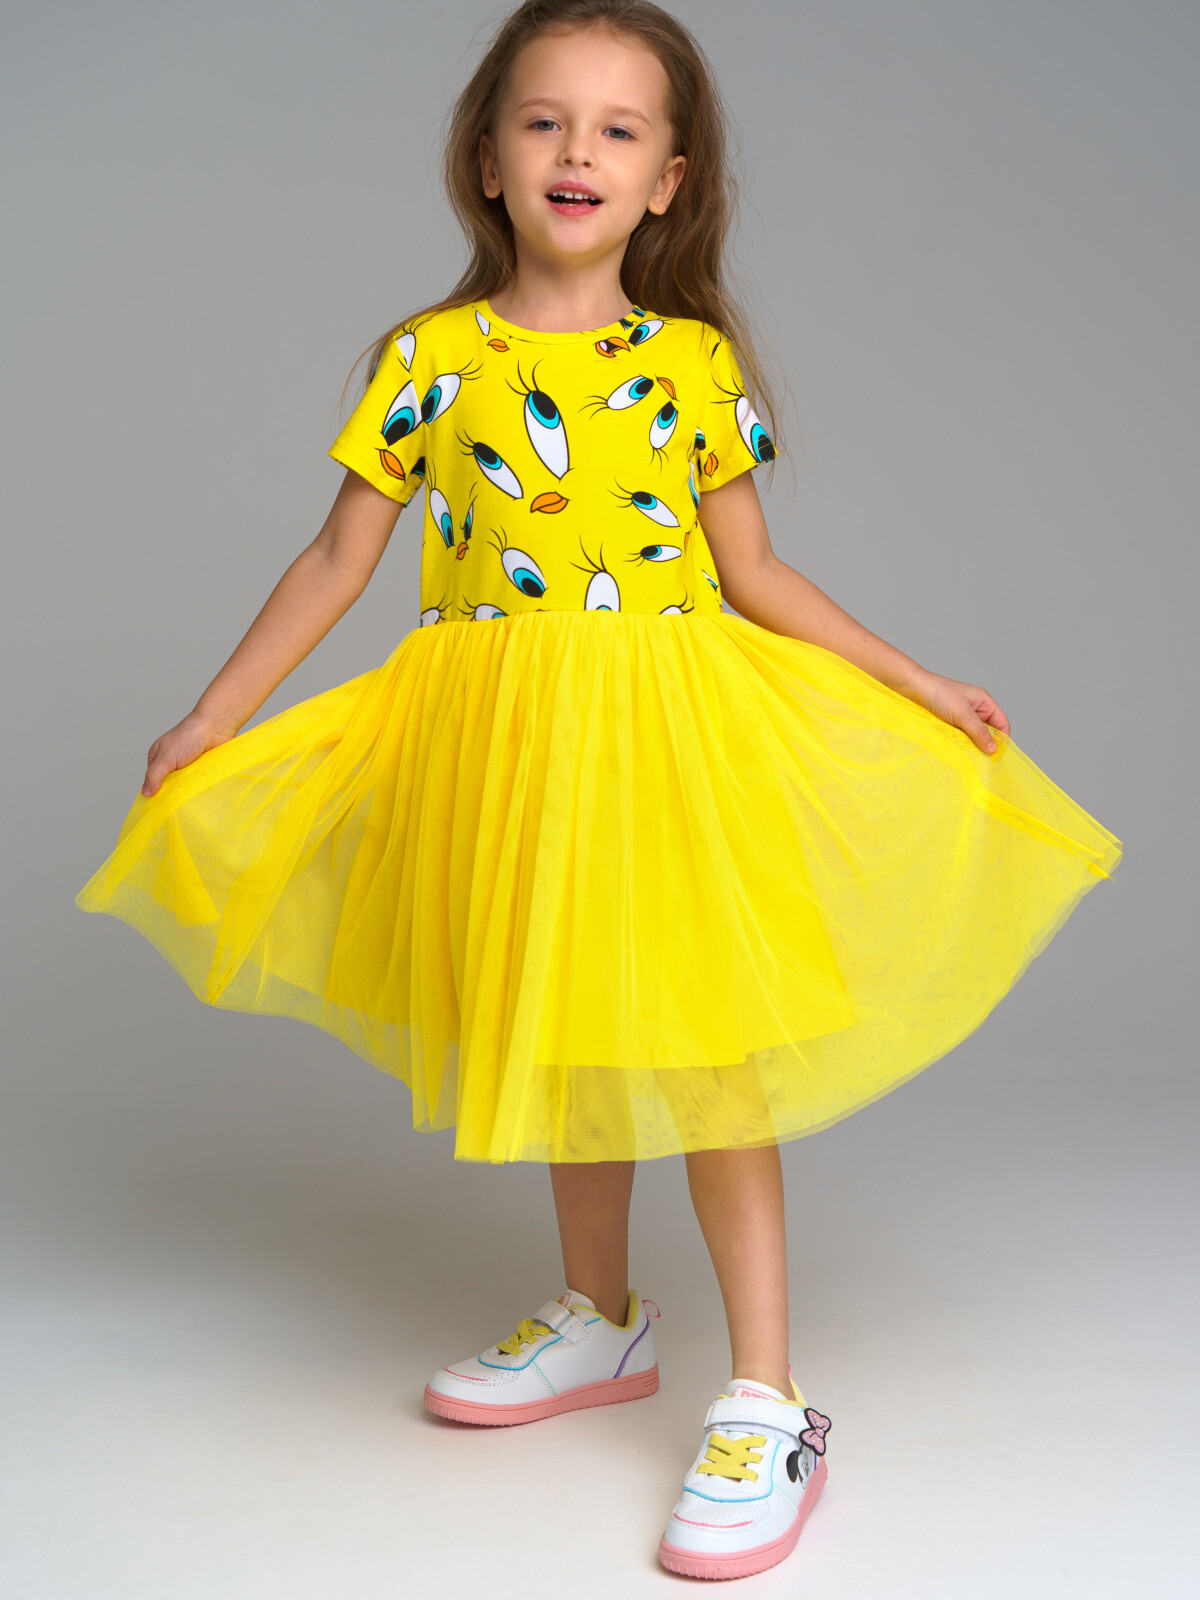 Платье детское PlayToday 12342035, цвет жёлтый, размер 116 playtoday платье для девочки be positive 12342035